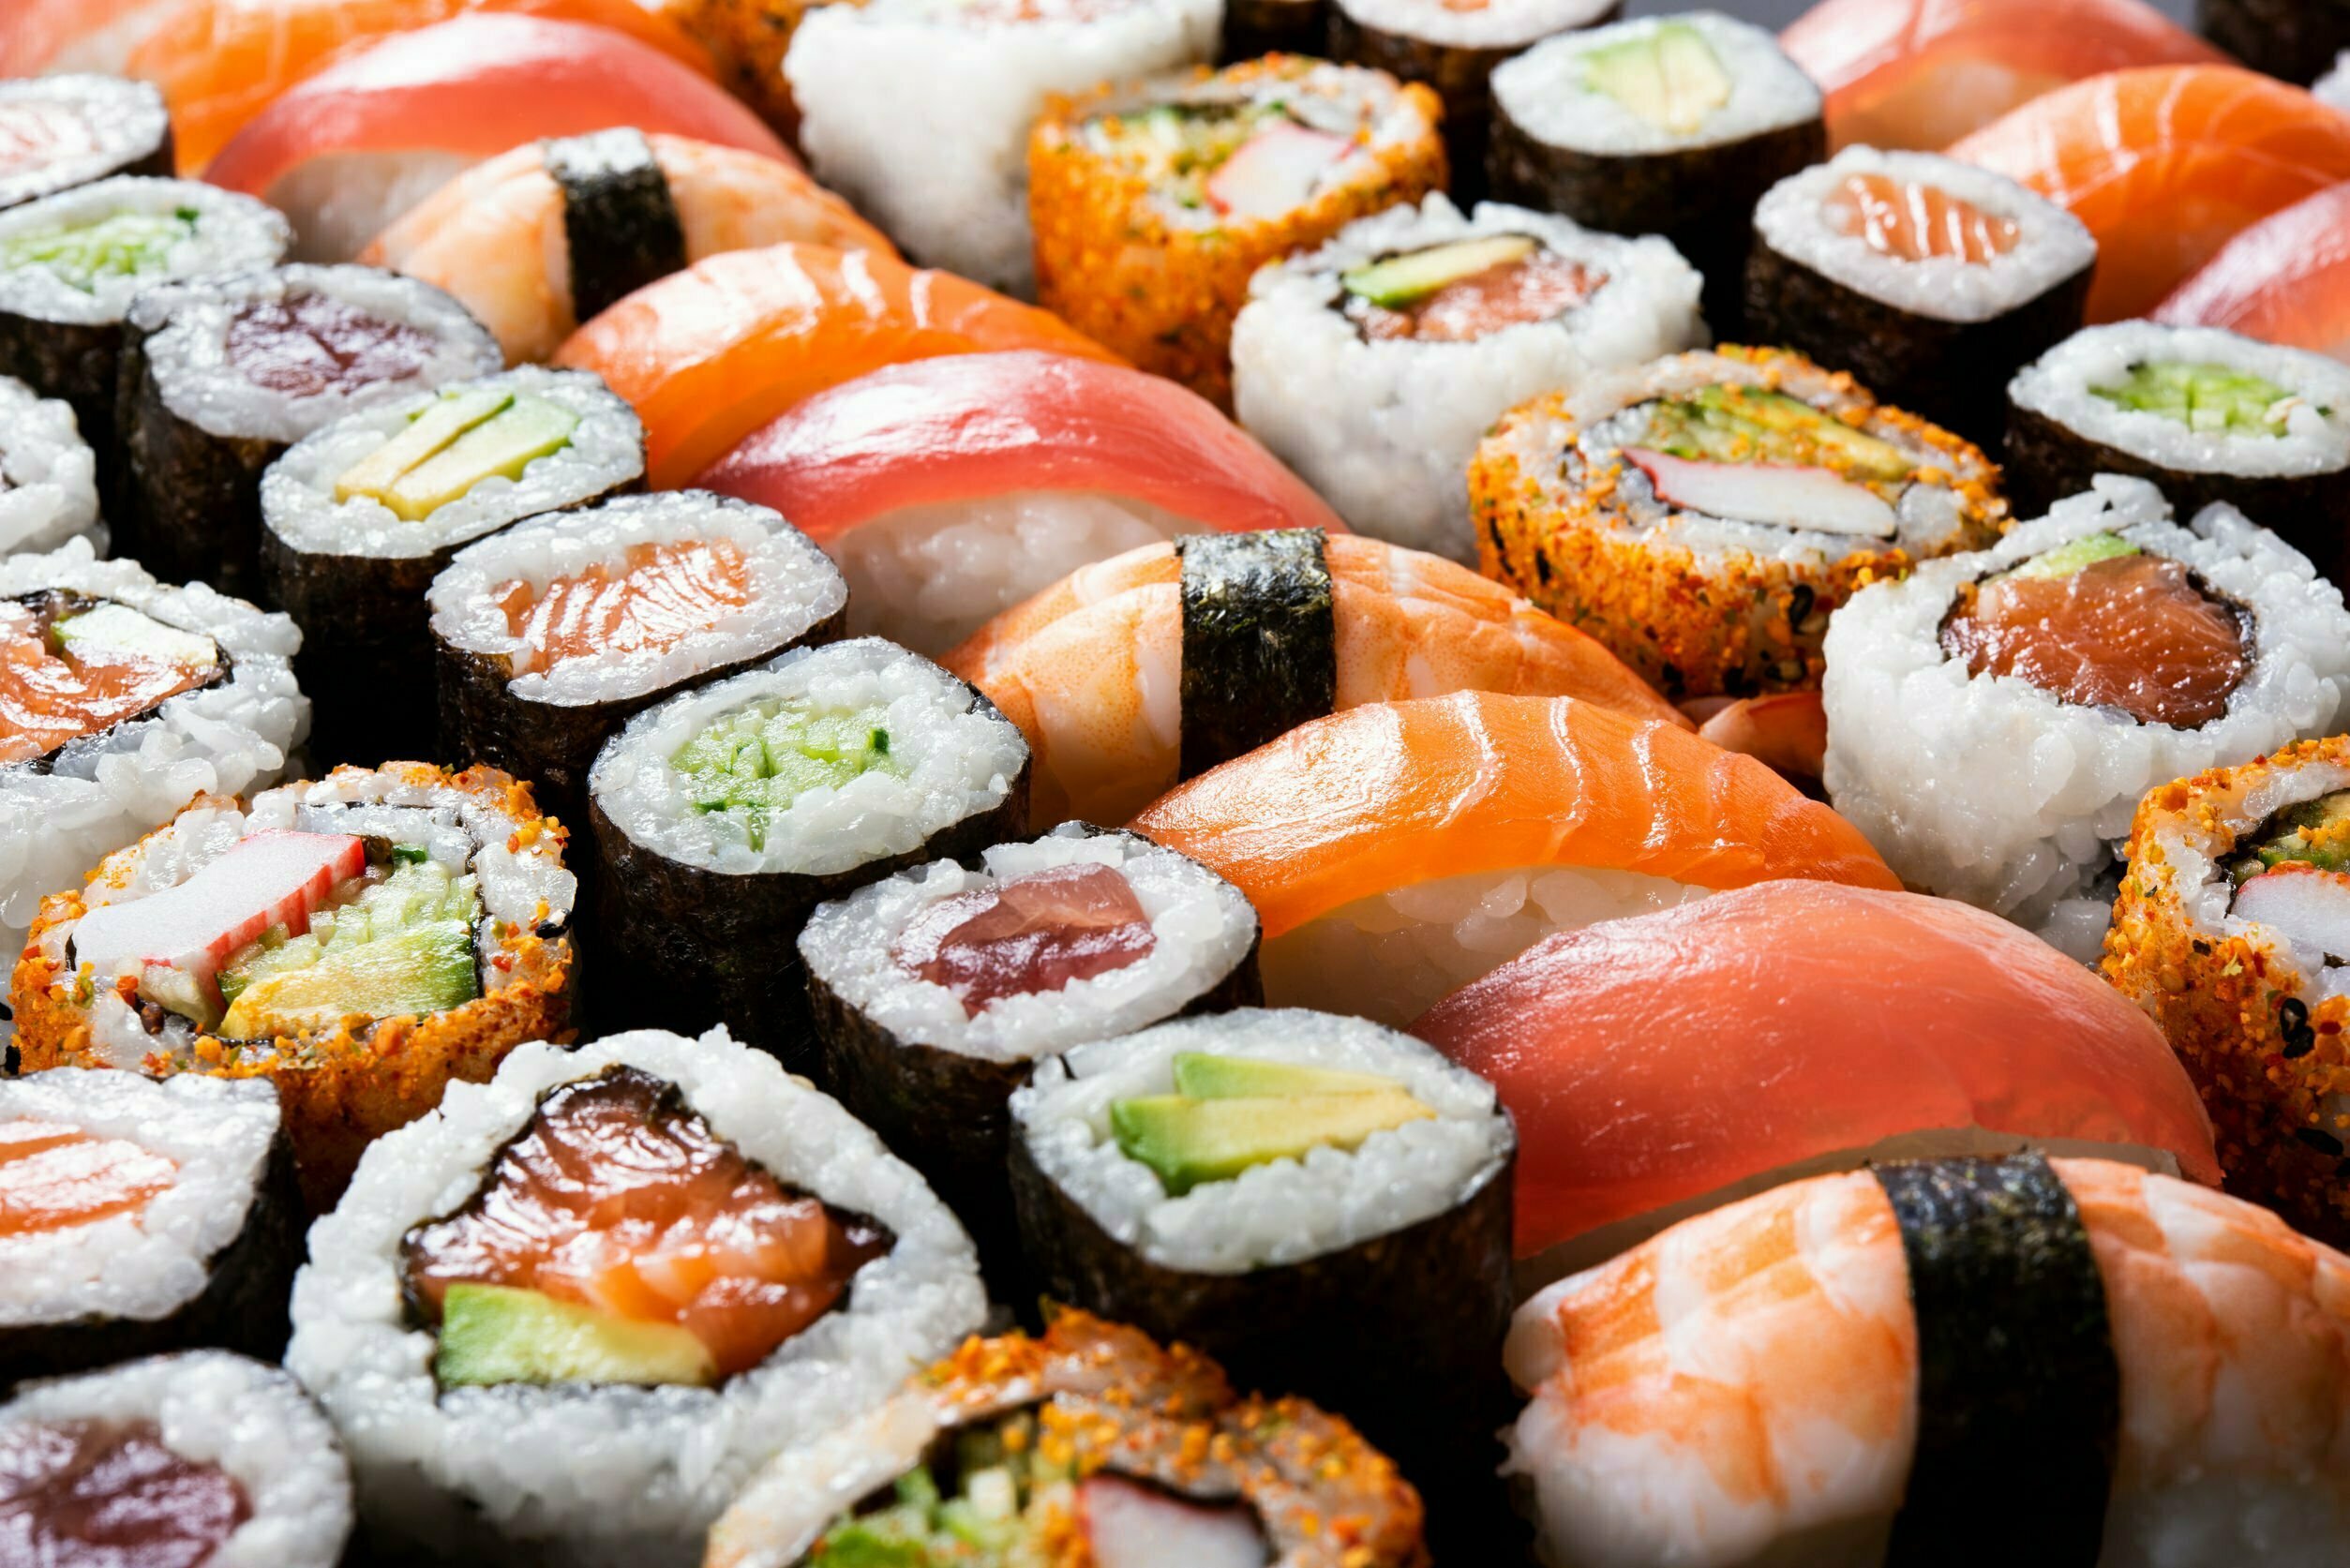 Worm nestelt zich in amandelen van sushi-etende vrouw 13